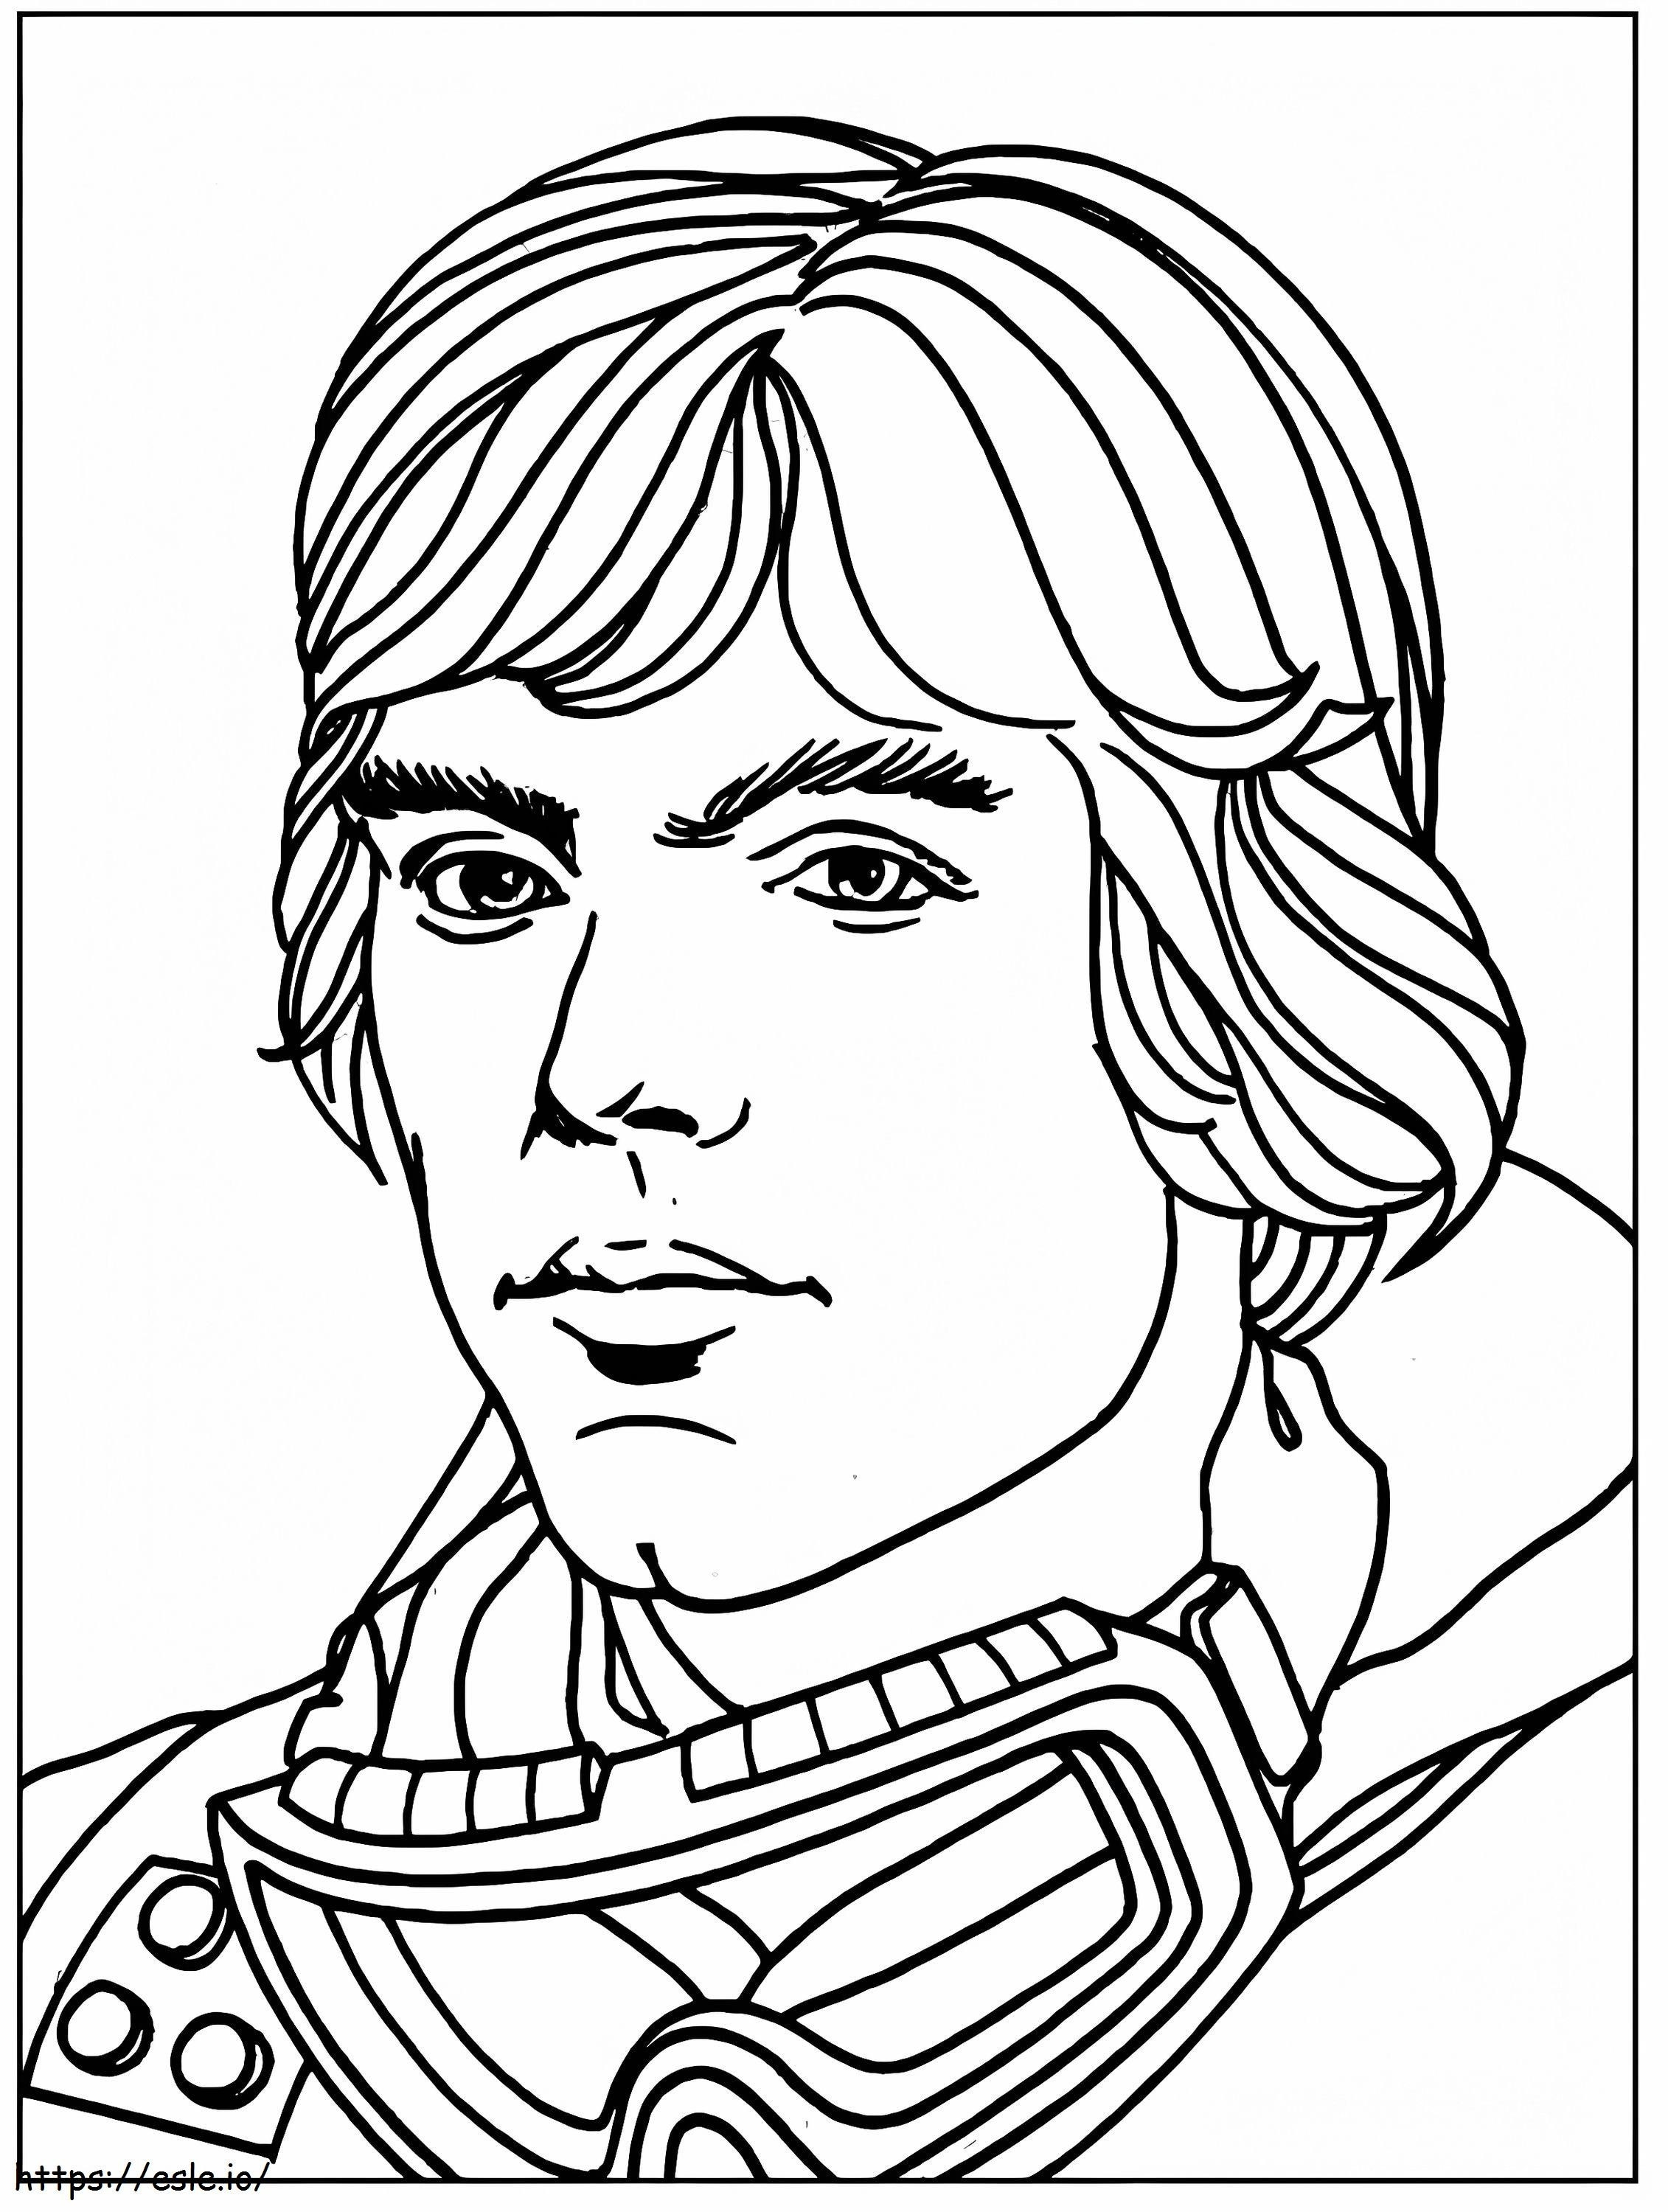 Cara de Luke Skywalker para colorear